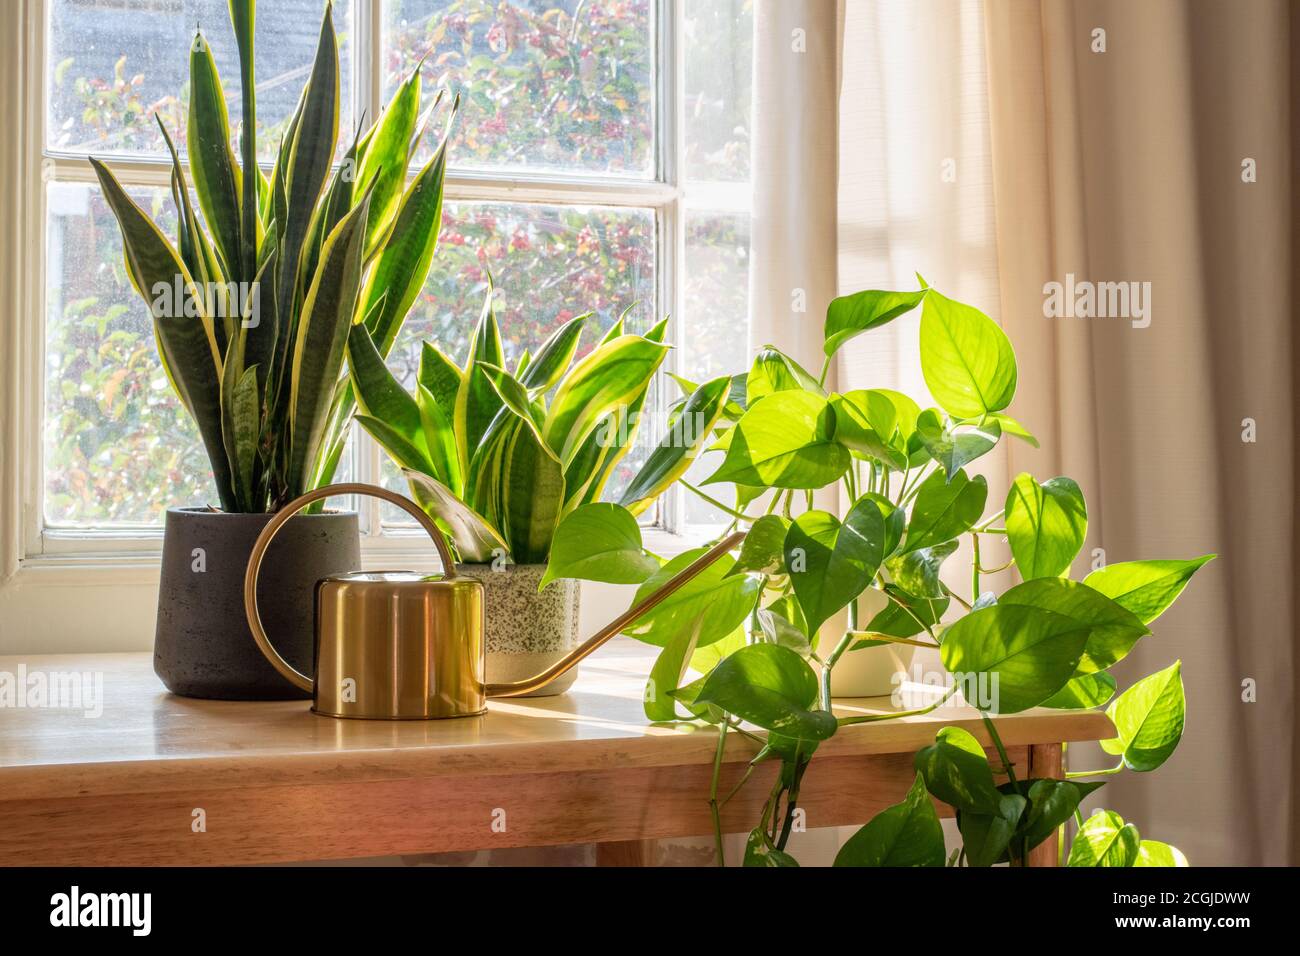 Une plante de serpent sansevieria trifasciata dans la fenêtre d'une maison moderne ou d'un intérieur d'appartement. Banque D'Images